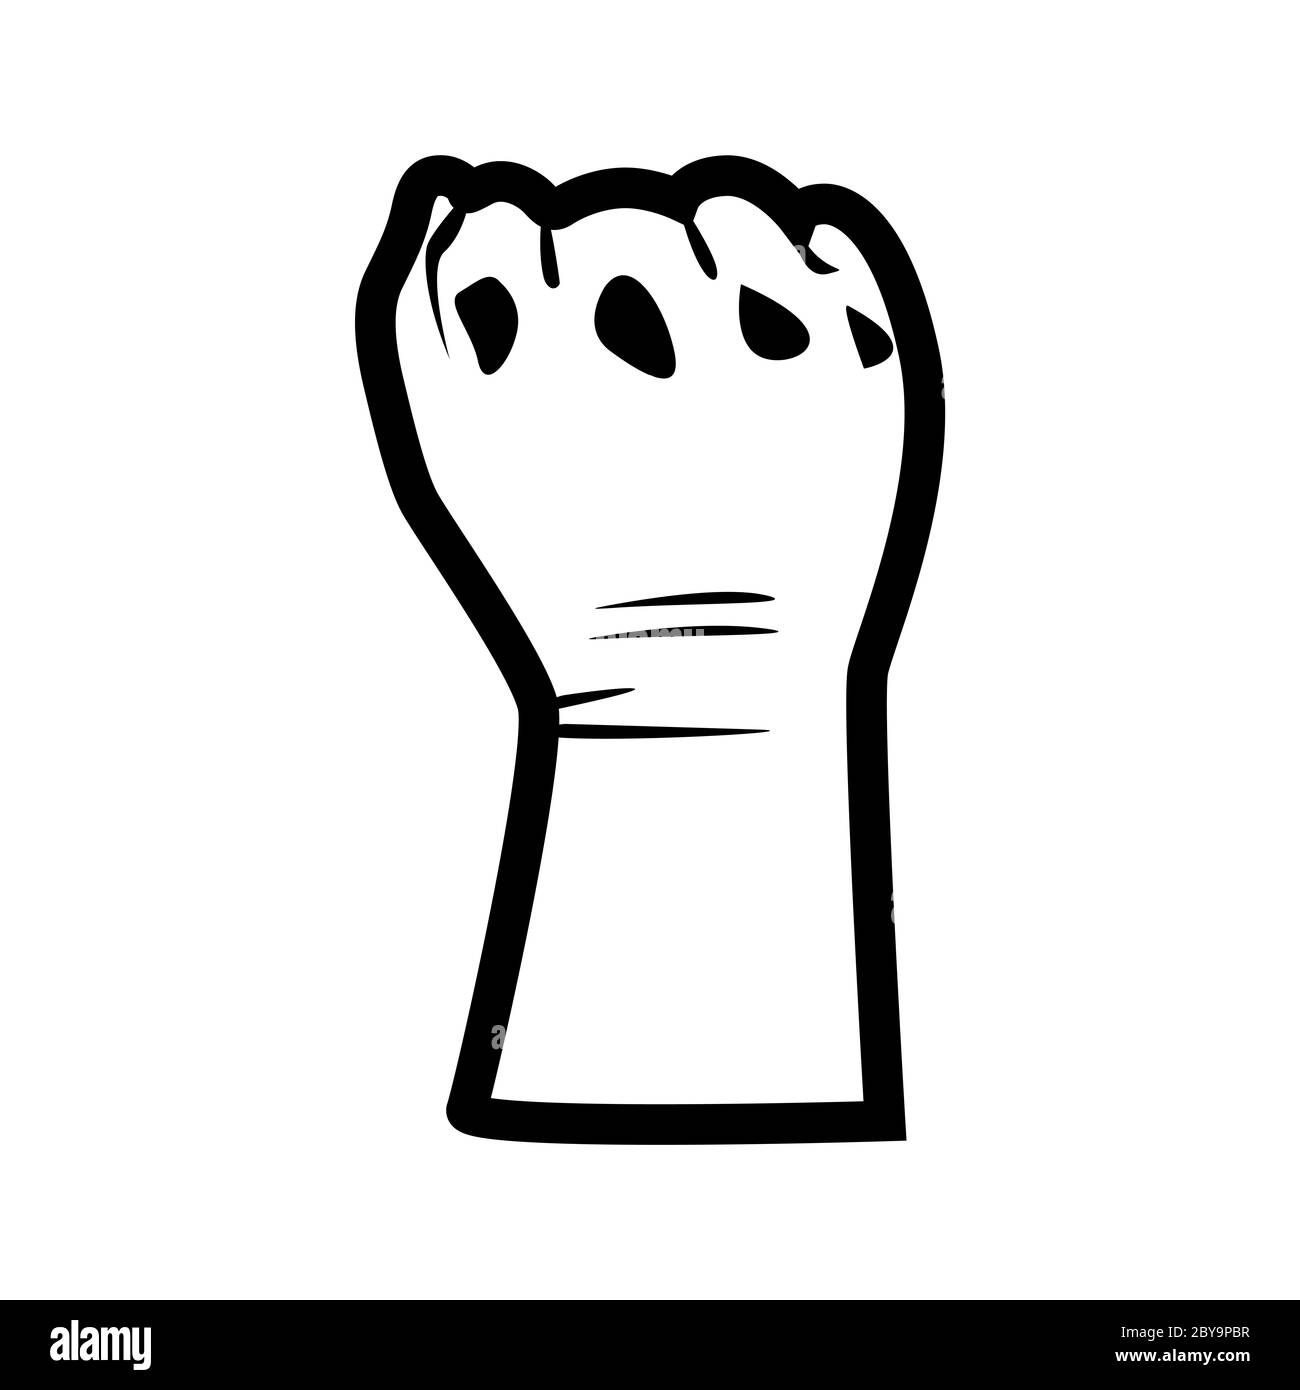 Simbolo della mano per le vite nere, la protesta è importante negli Stati Uniti per fermare la violenza ai neri. Lotta per il diritto umano dei popoli neri negli Stati Uniti. Stile piatto Foto Stock